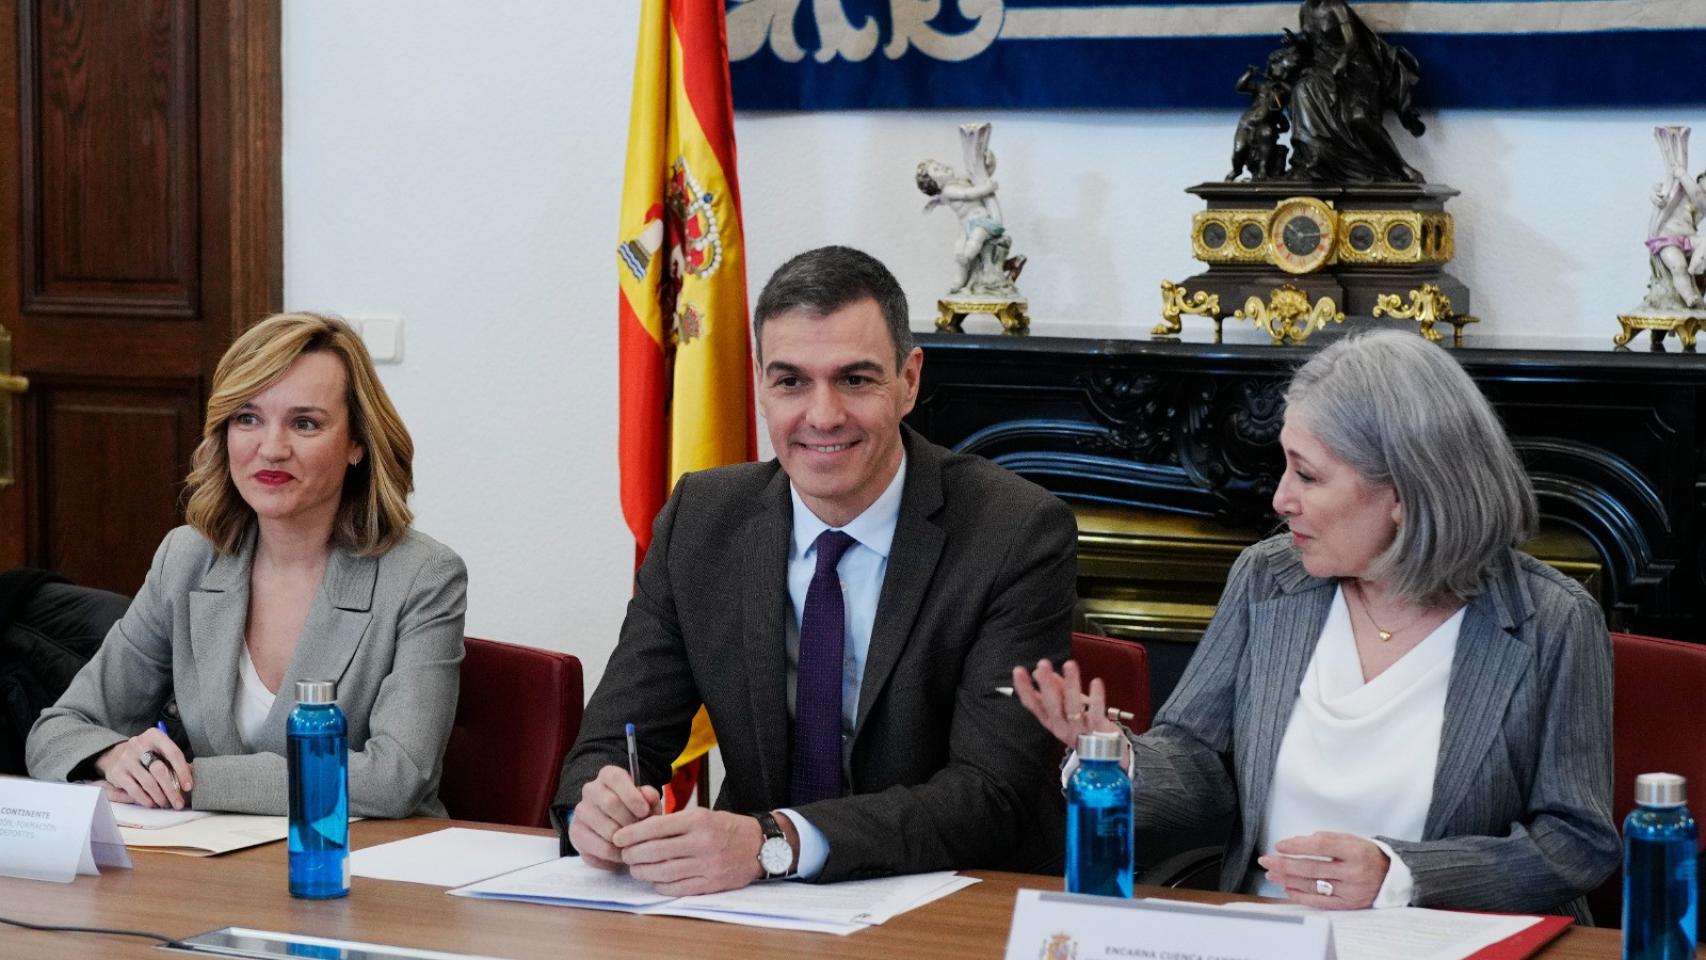 La ministra de Educación, Pilar Alegría, junto al presidente, Pedro Sánchez, y Encarna Cuenca, presidenta del Consejo de Estado